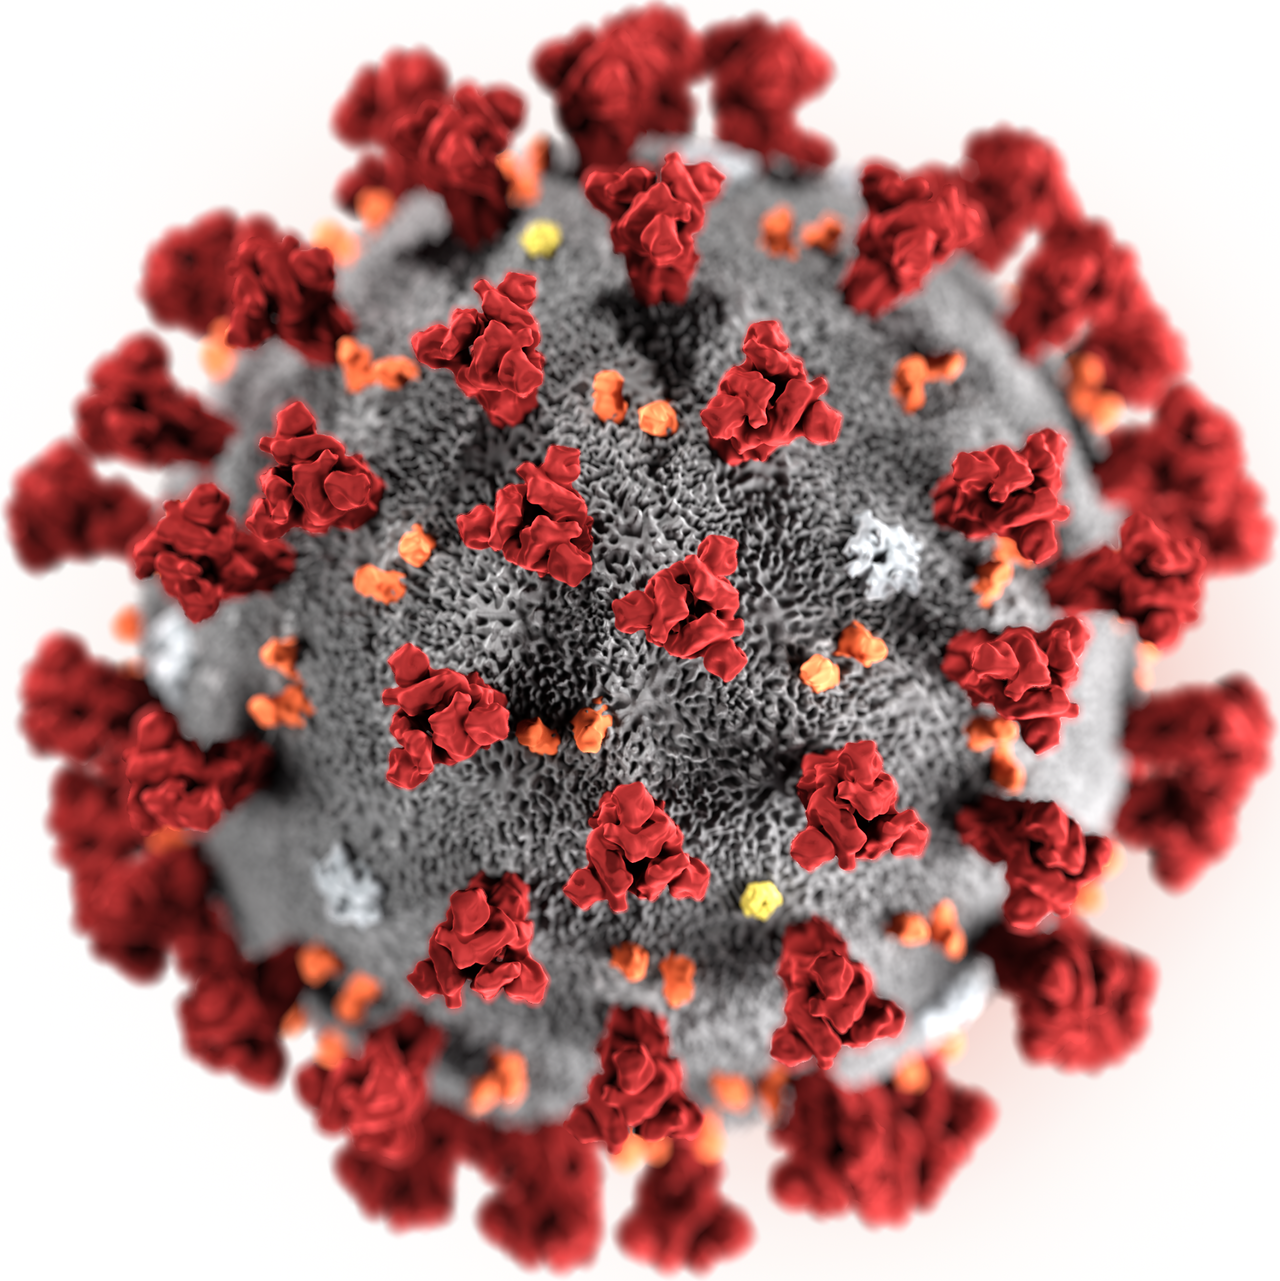 新型コロナウイルス(2019 n-CoV)のペットへの感染について